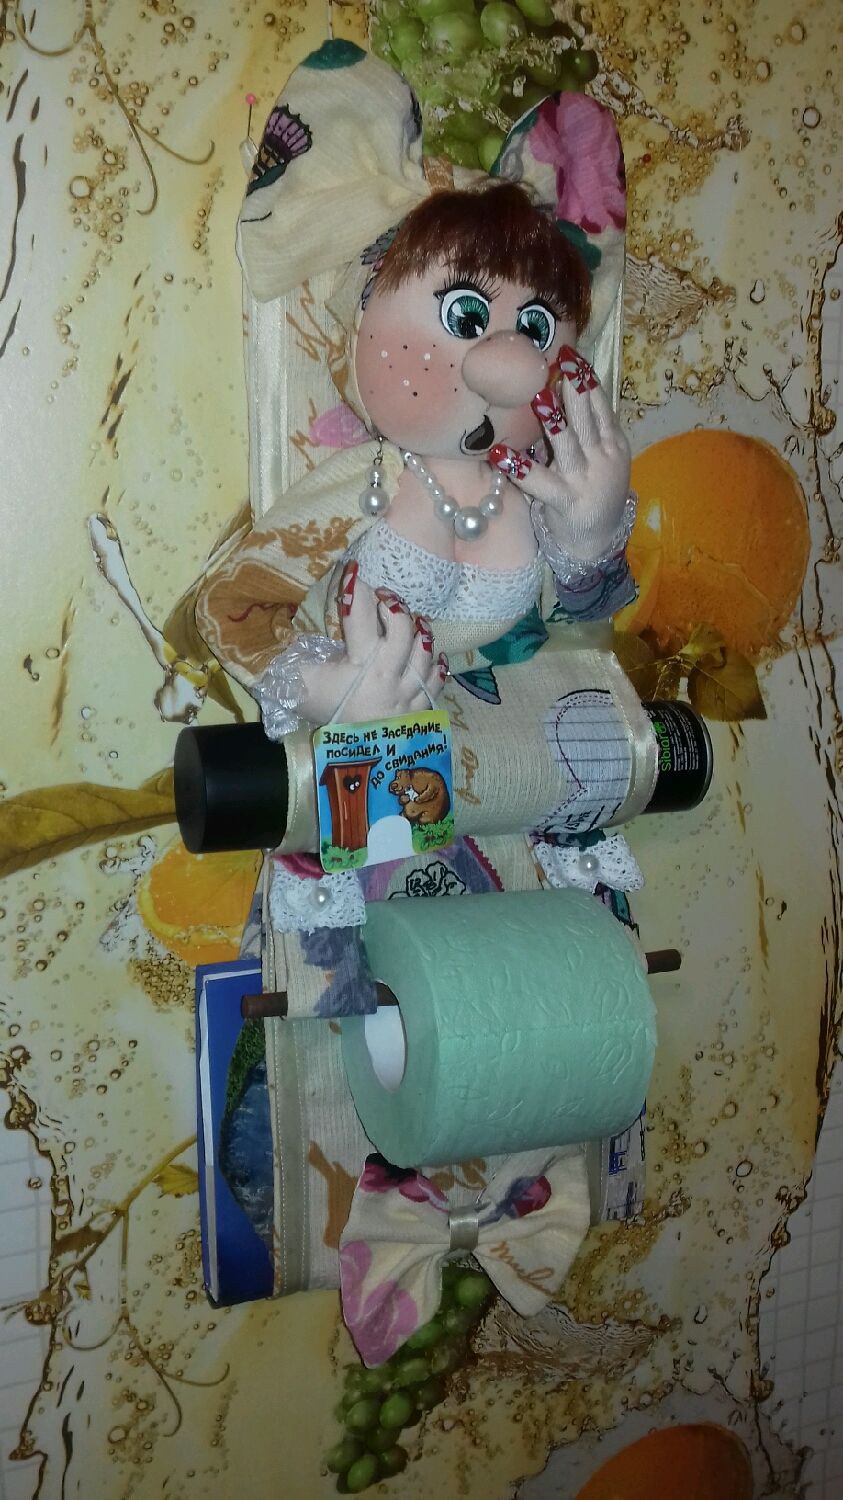 Кукла-держатель туалетной бумаги, б.полотенец навесной